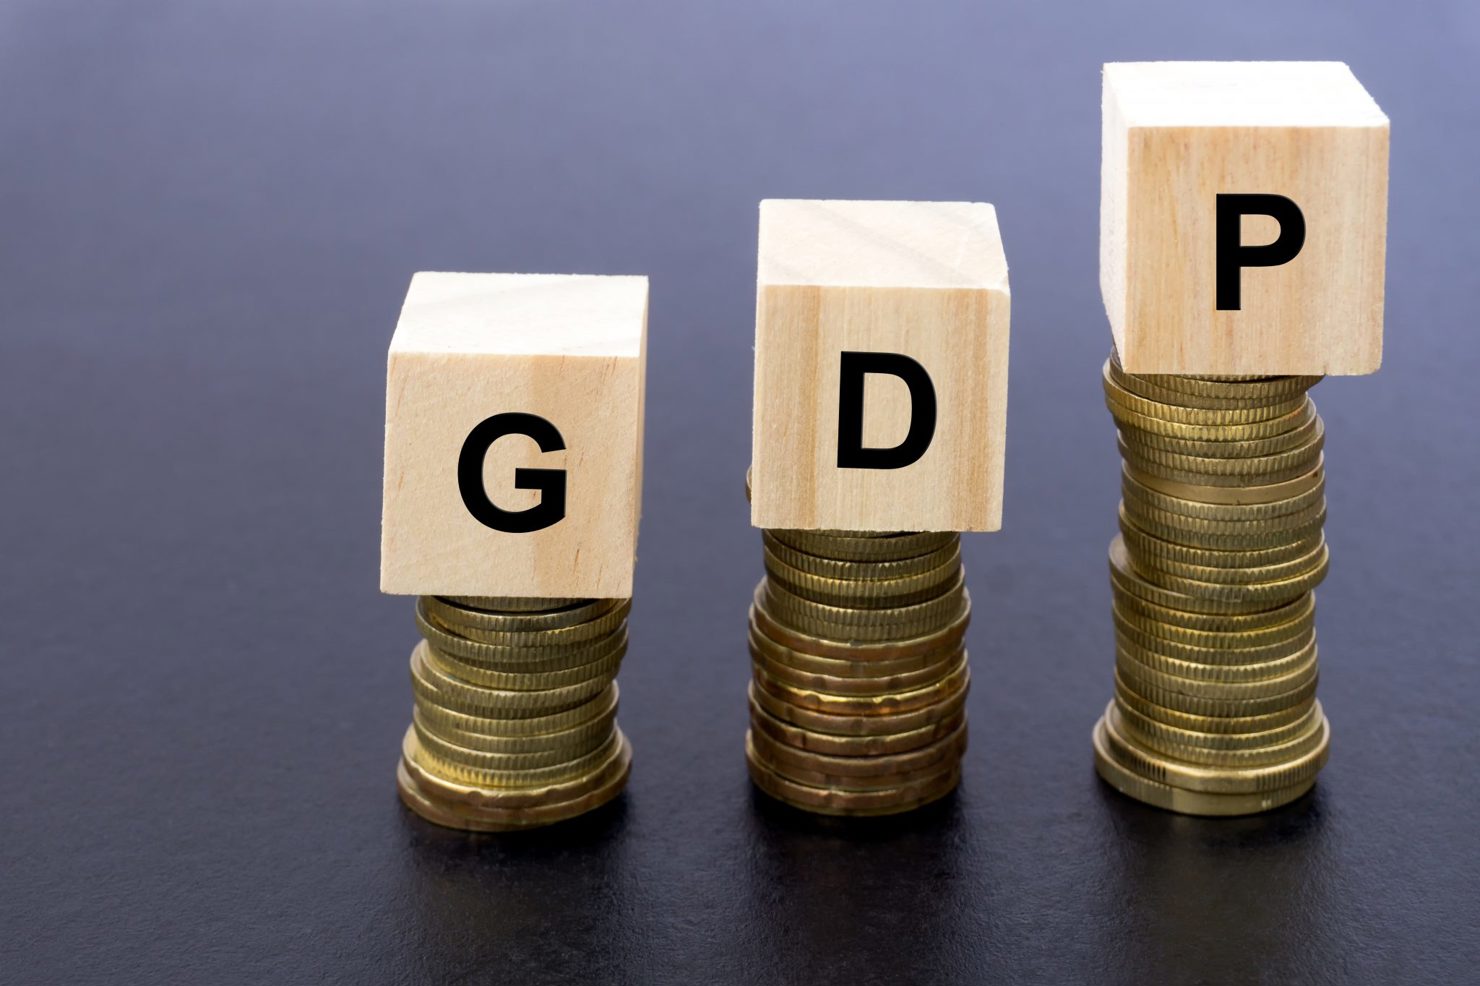 Tăng trưởng GDP quý III/2022 tăng 13,67% so với cùng kỳ năm 2021. 